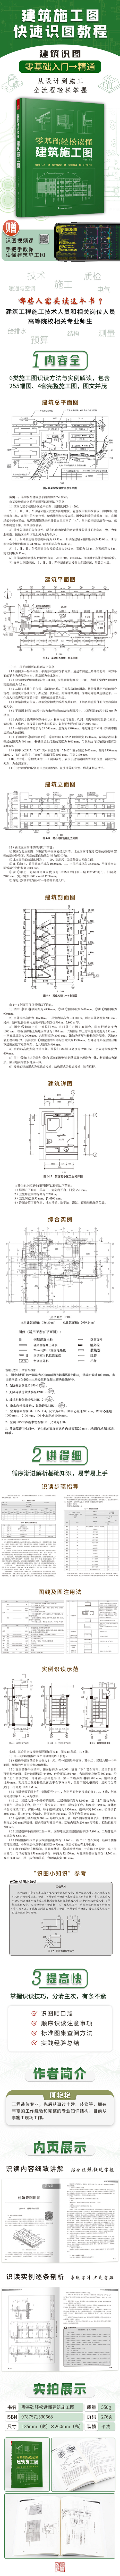 《零基础轻松读懂建筑施工图》详情页790-2022-10-14.jpg